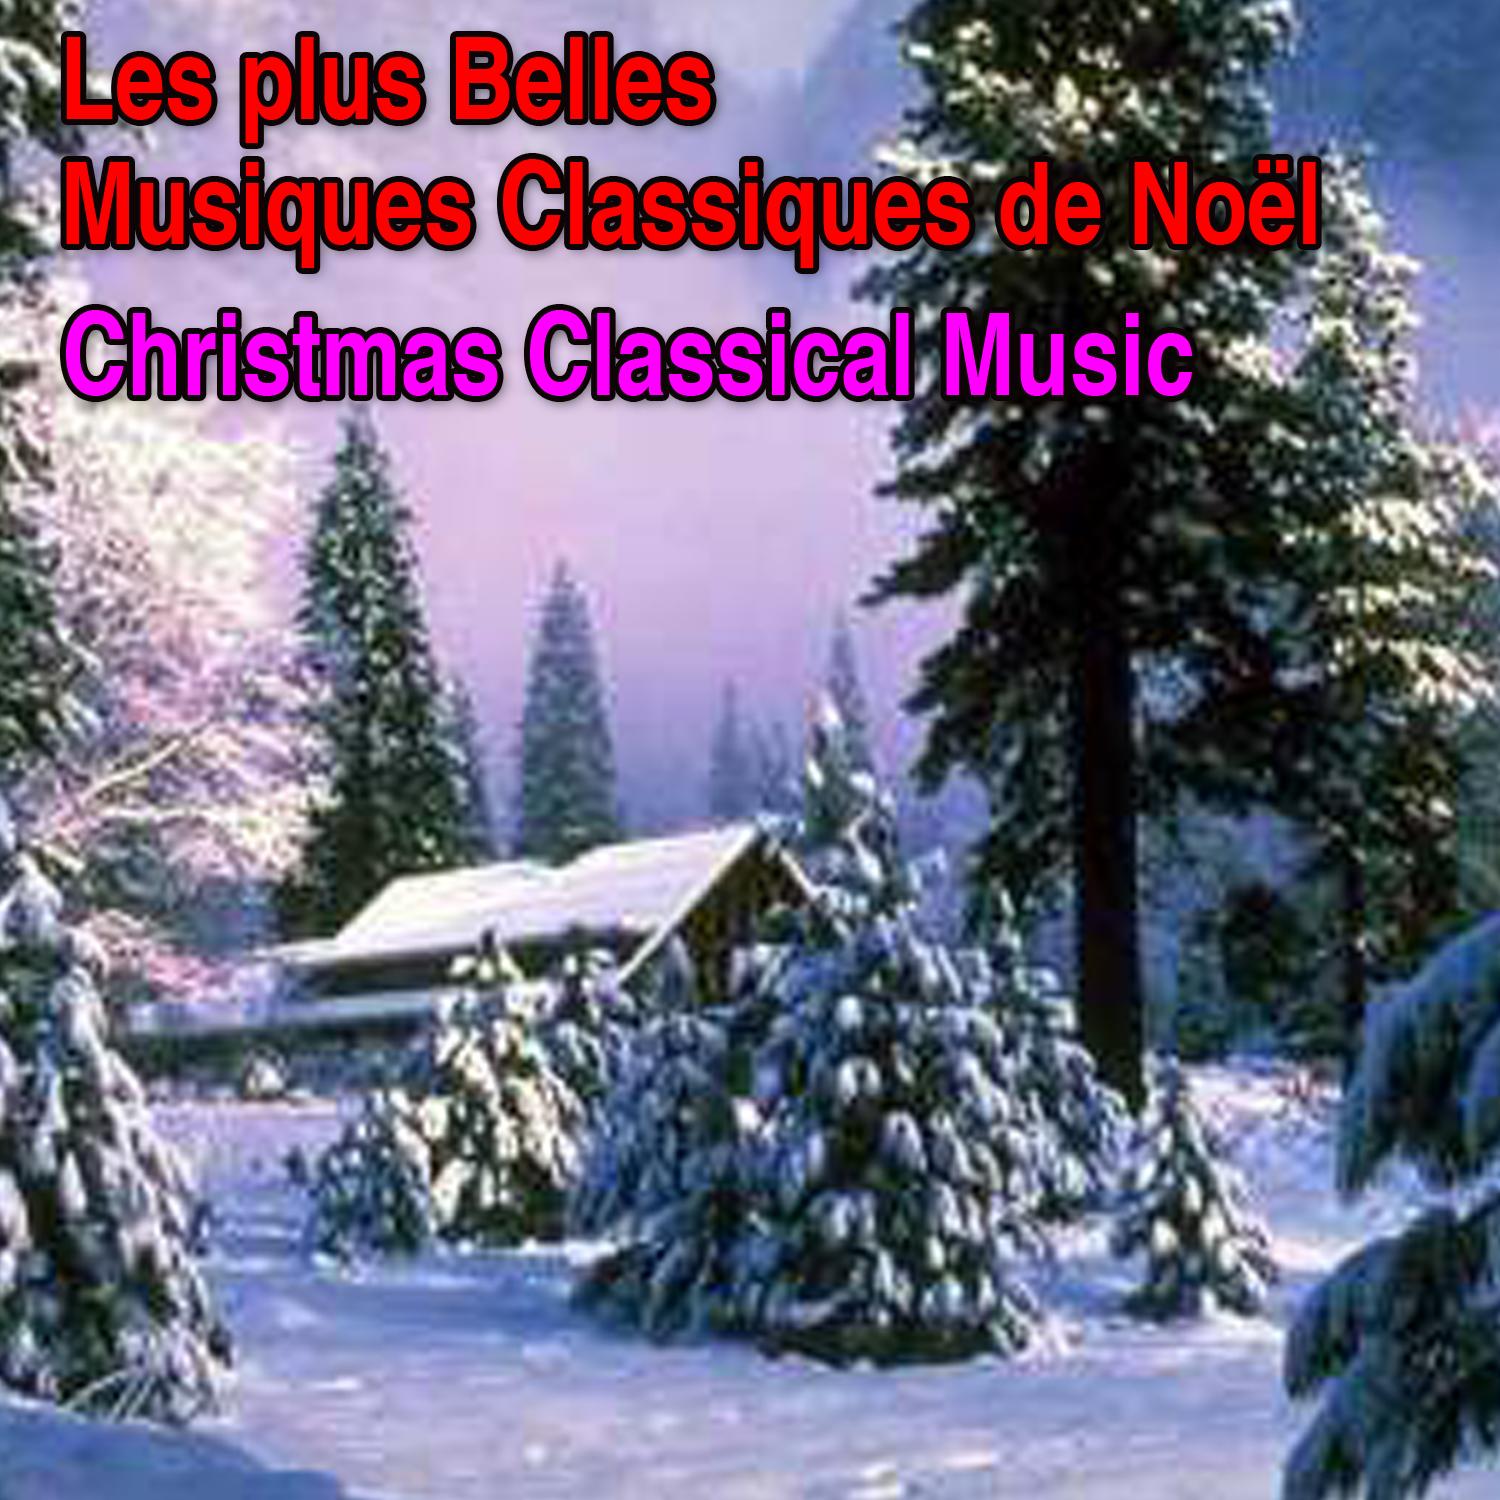 Les plus belles musiques classiques de Noël (Christmas Classical Music)